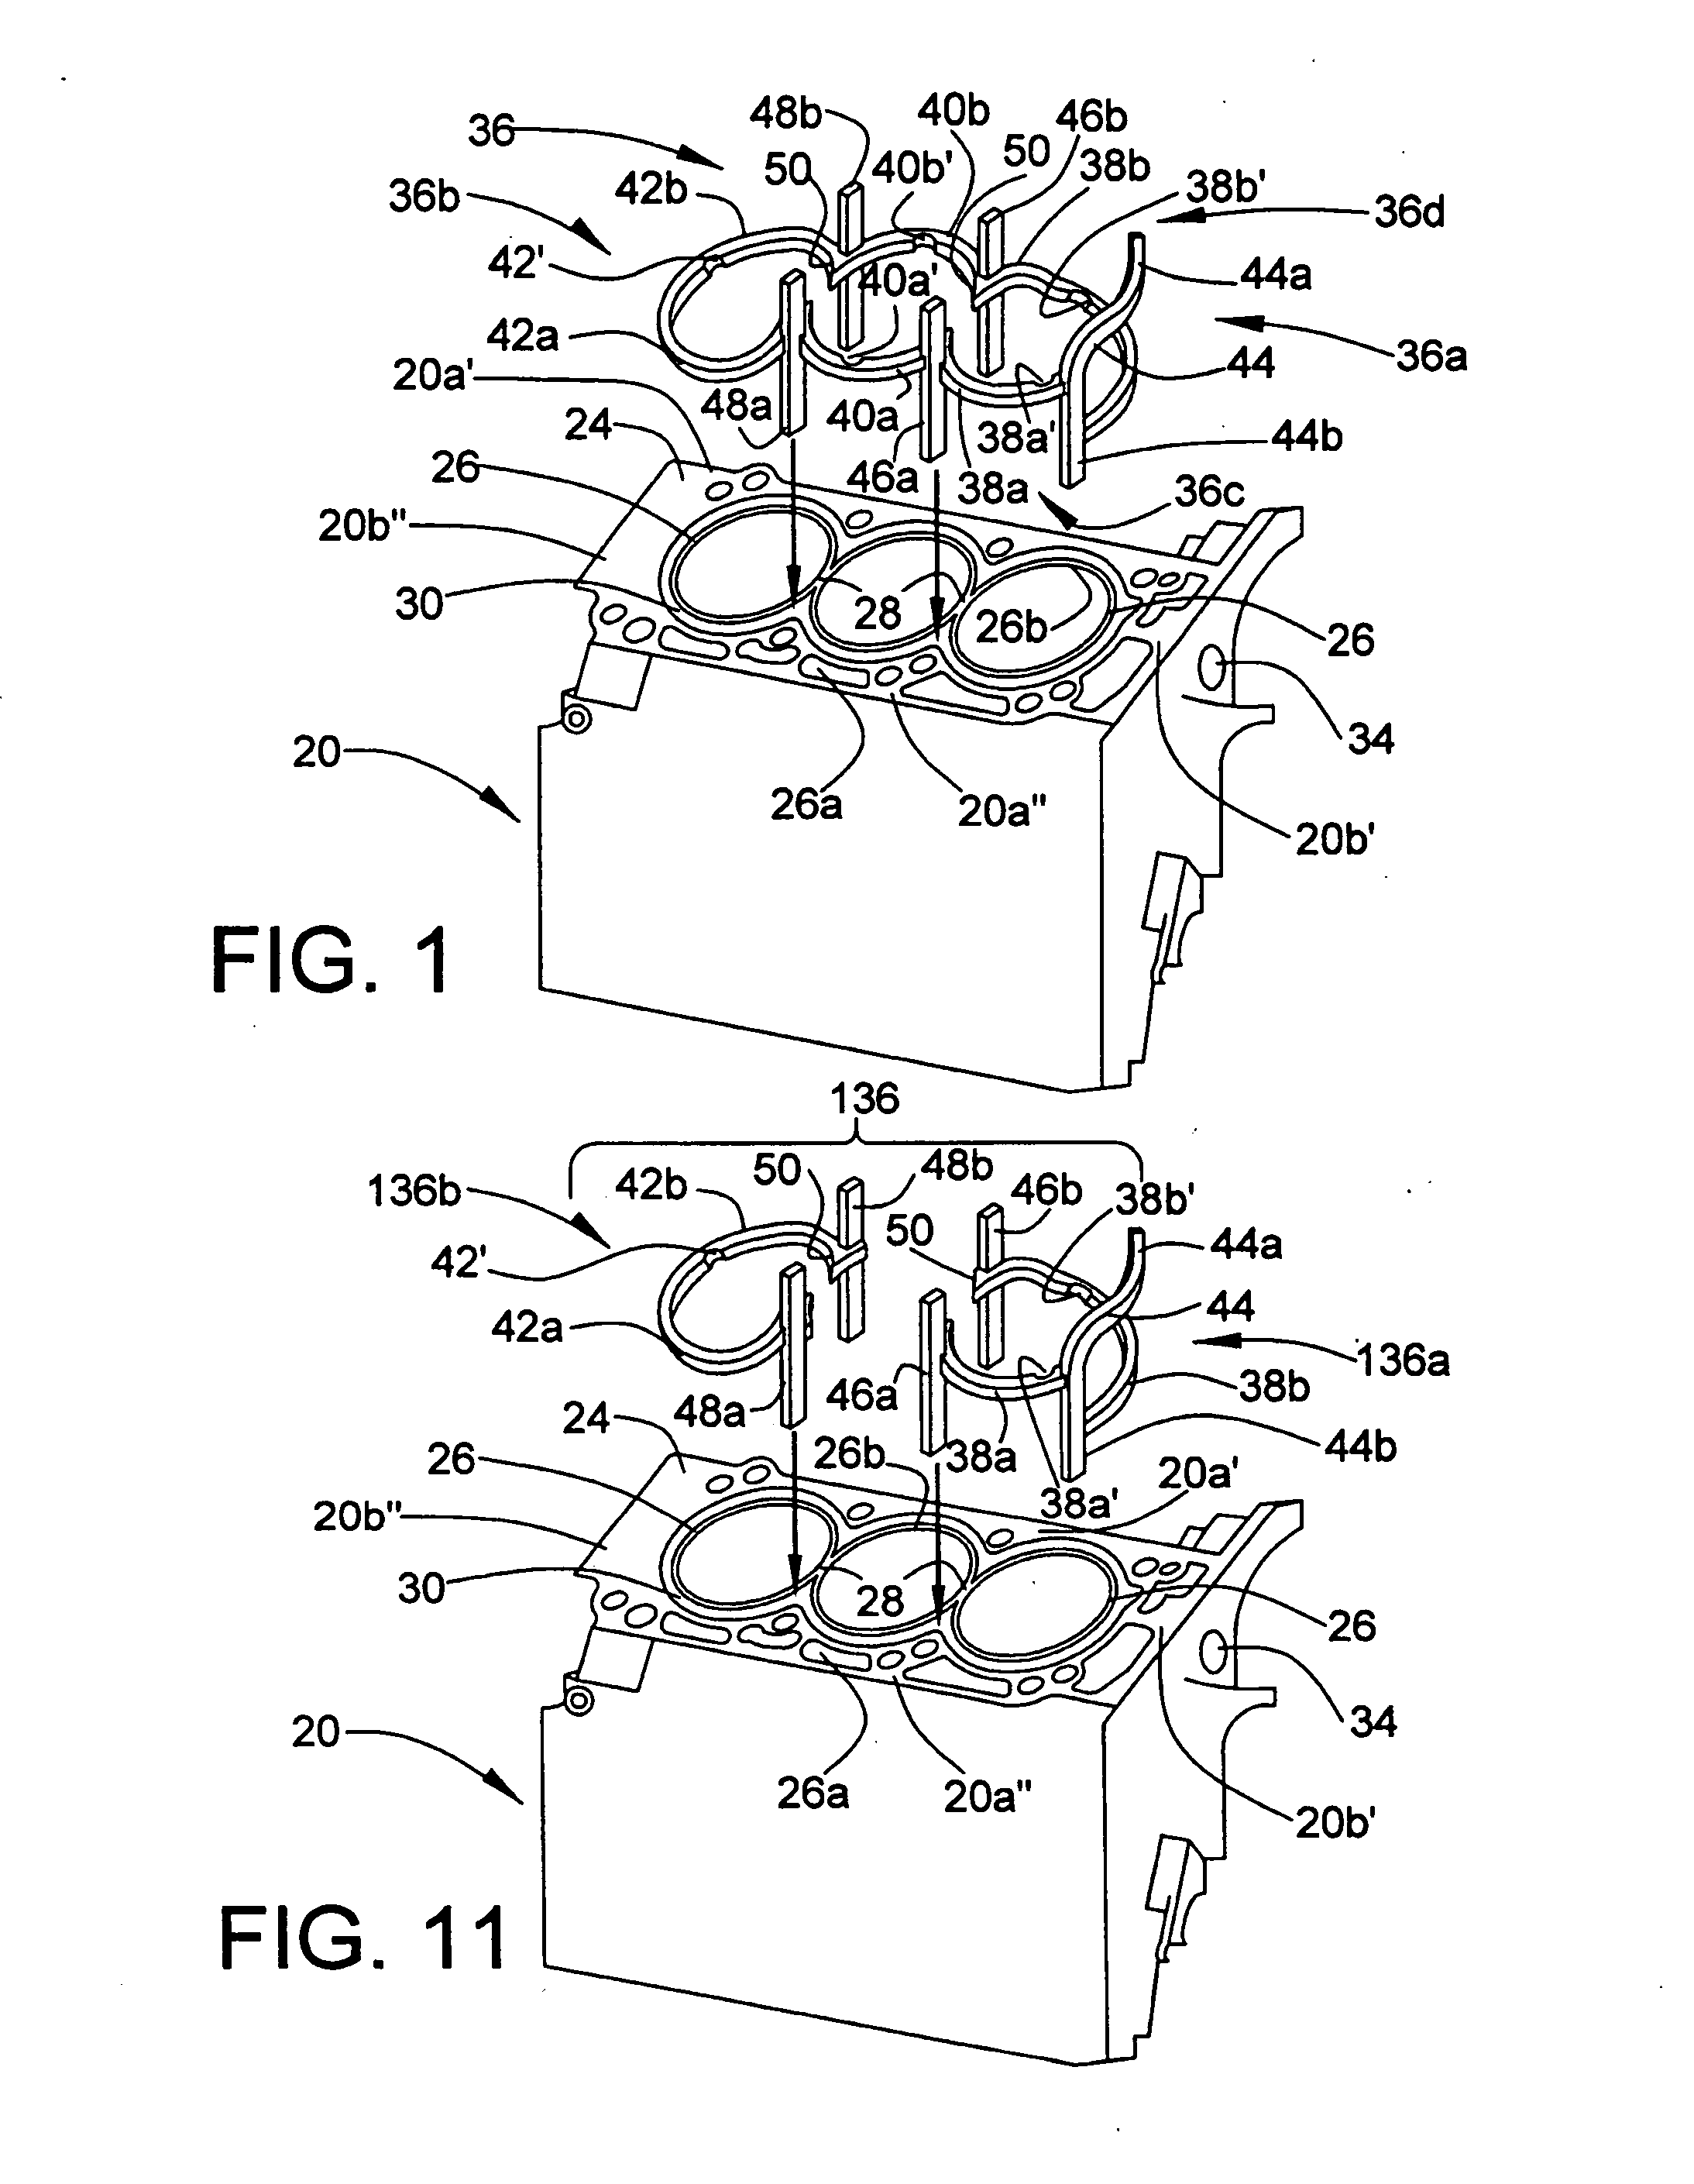 Cylinder block cooling arrangement for multi-cylinder internal combustion engine